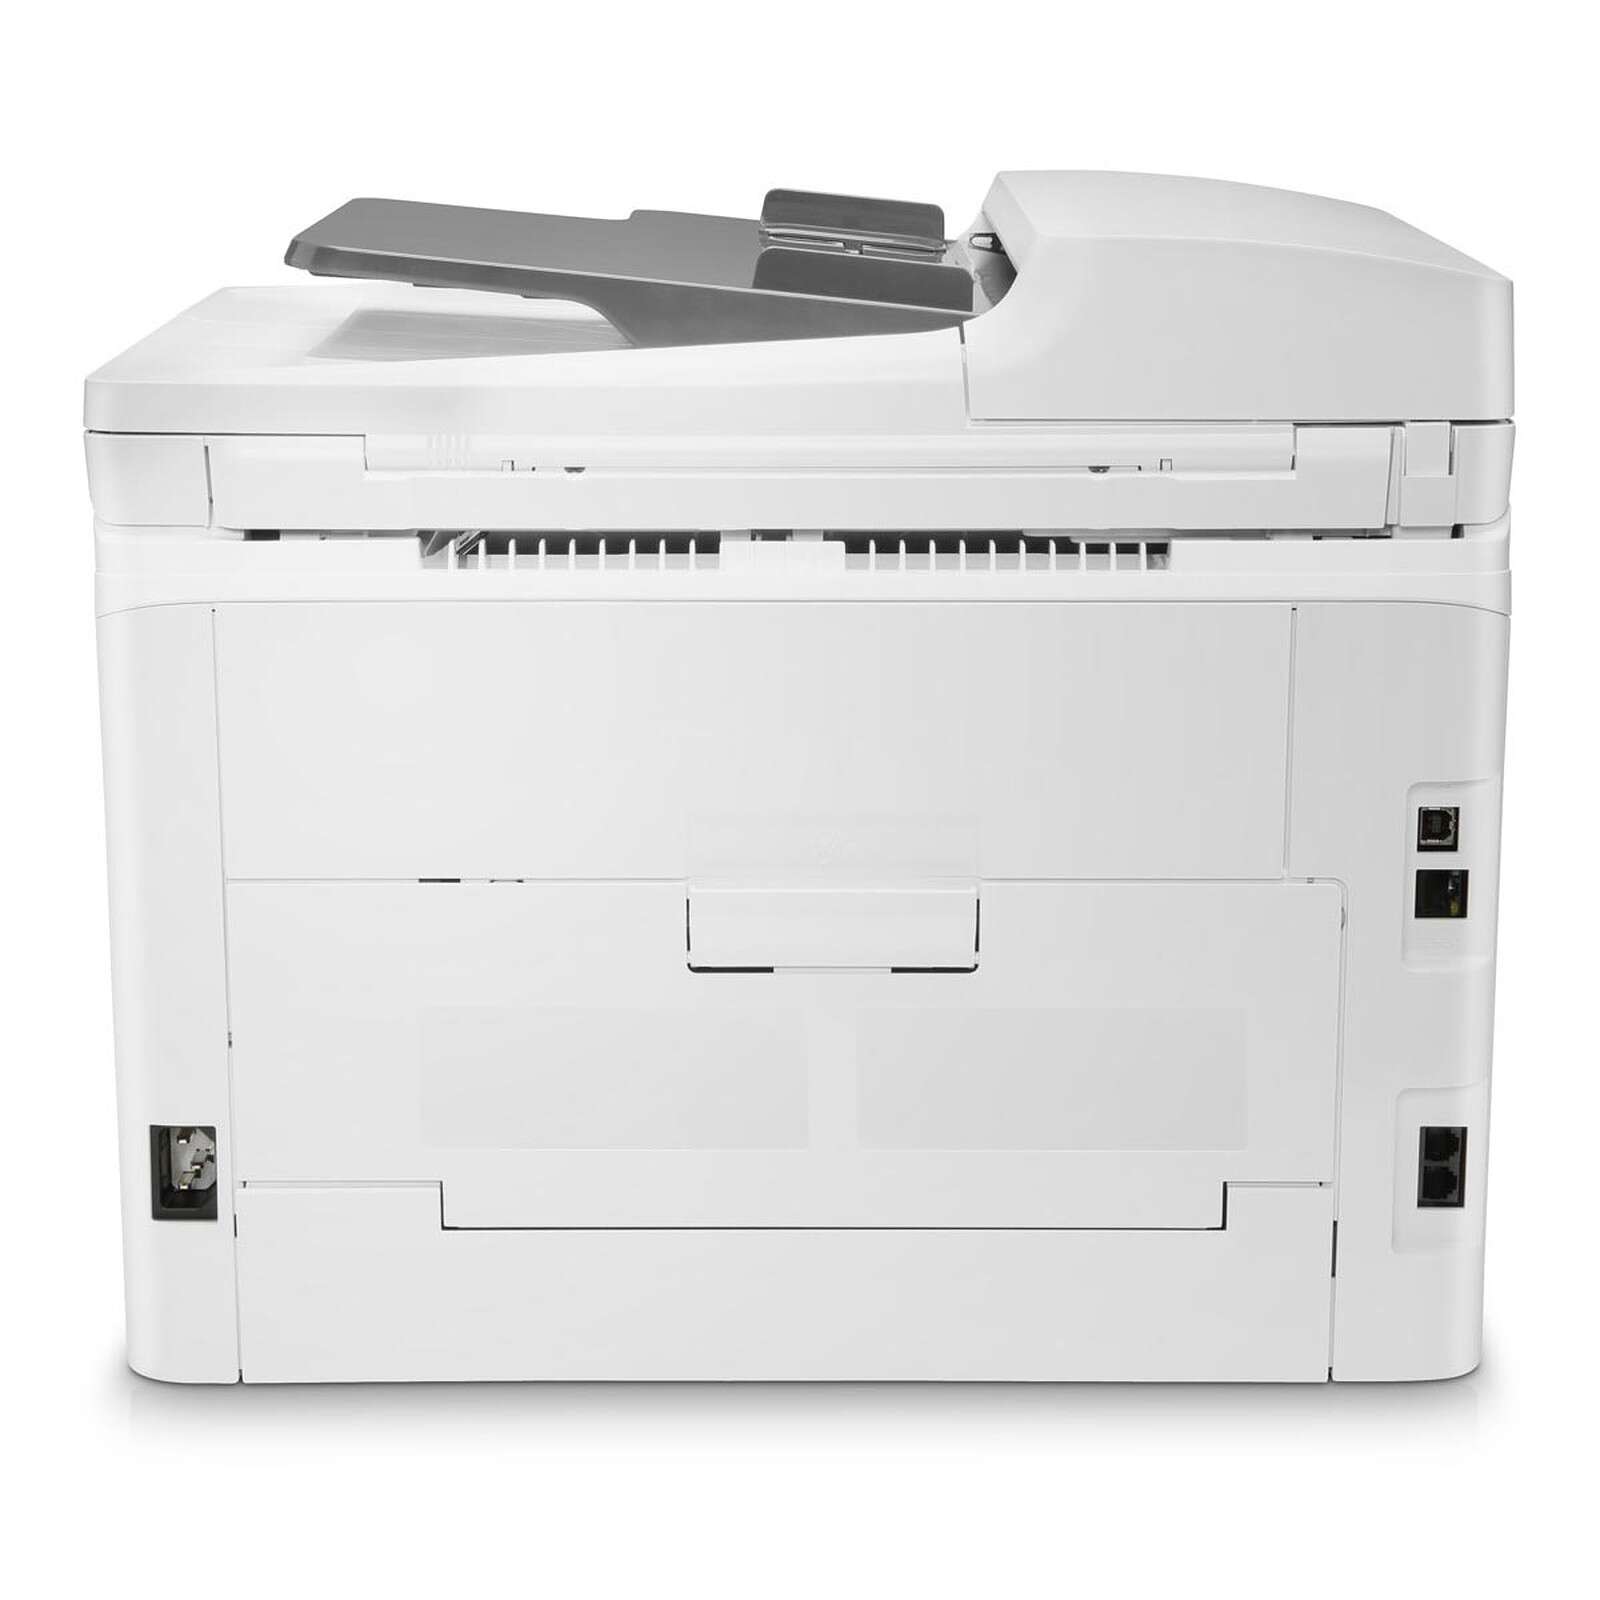 Acheter Imprimante couleur Portable couleur sans fil imprimante